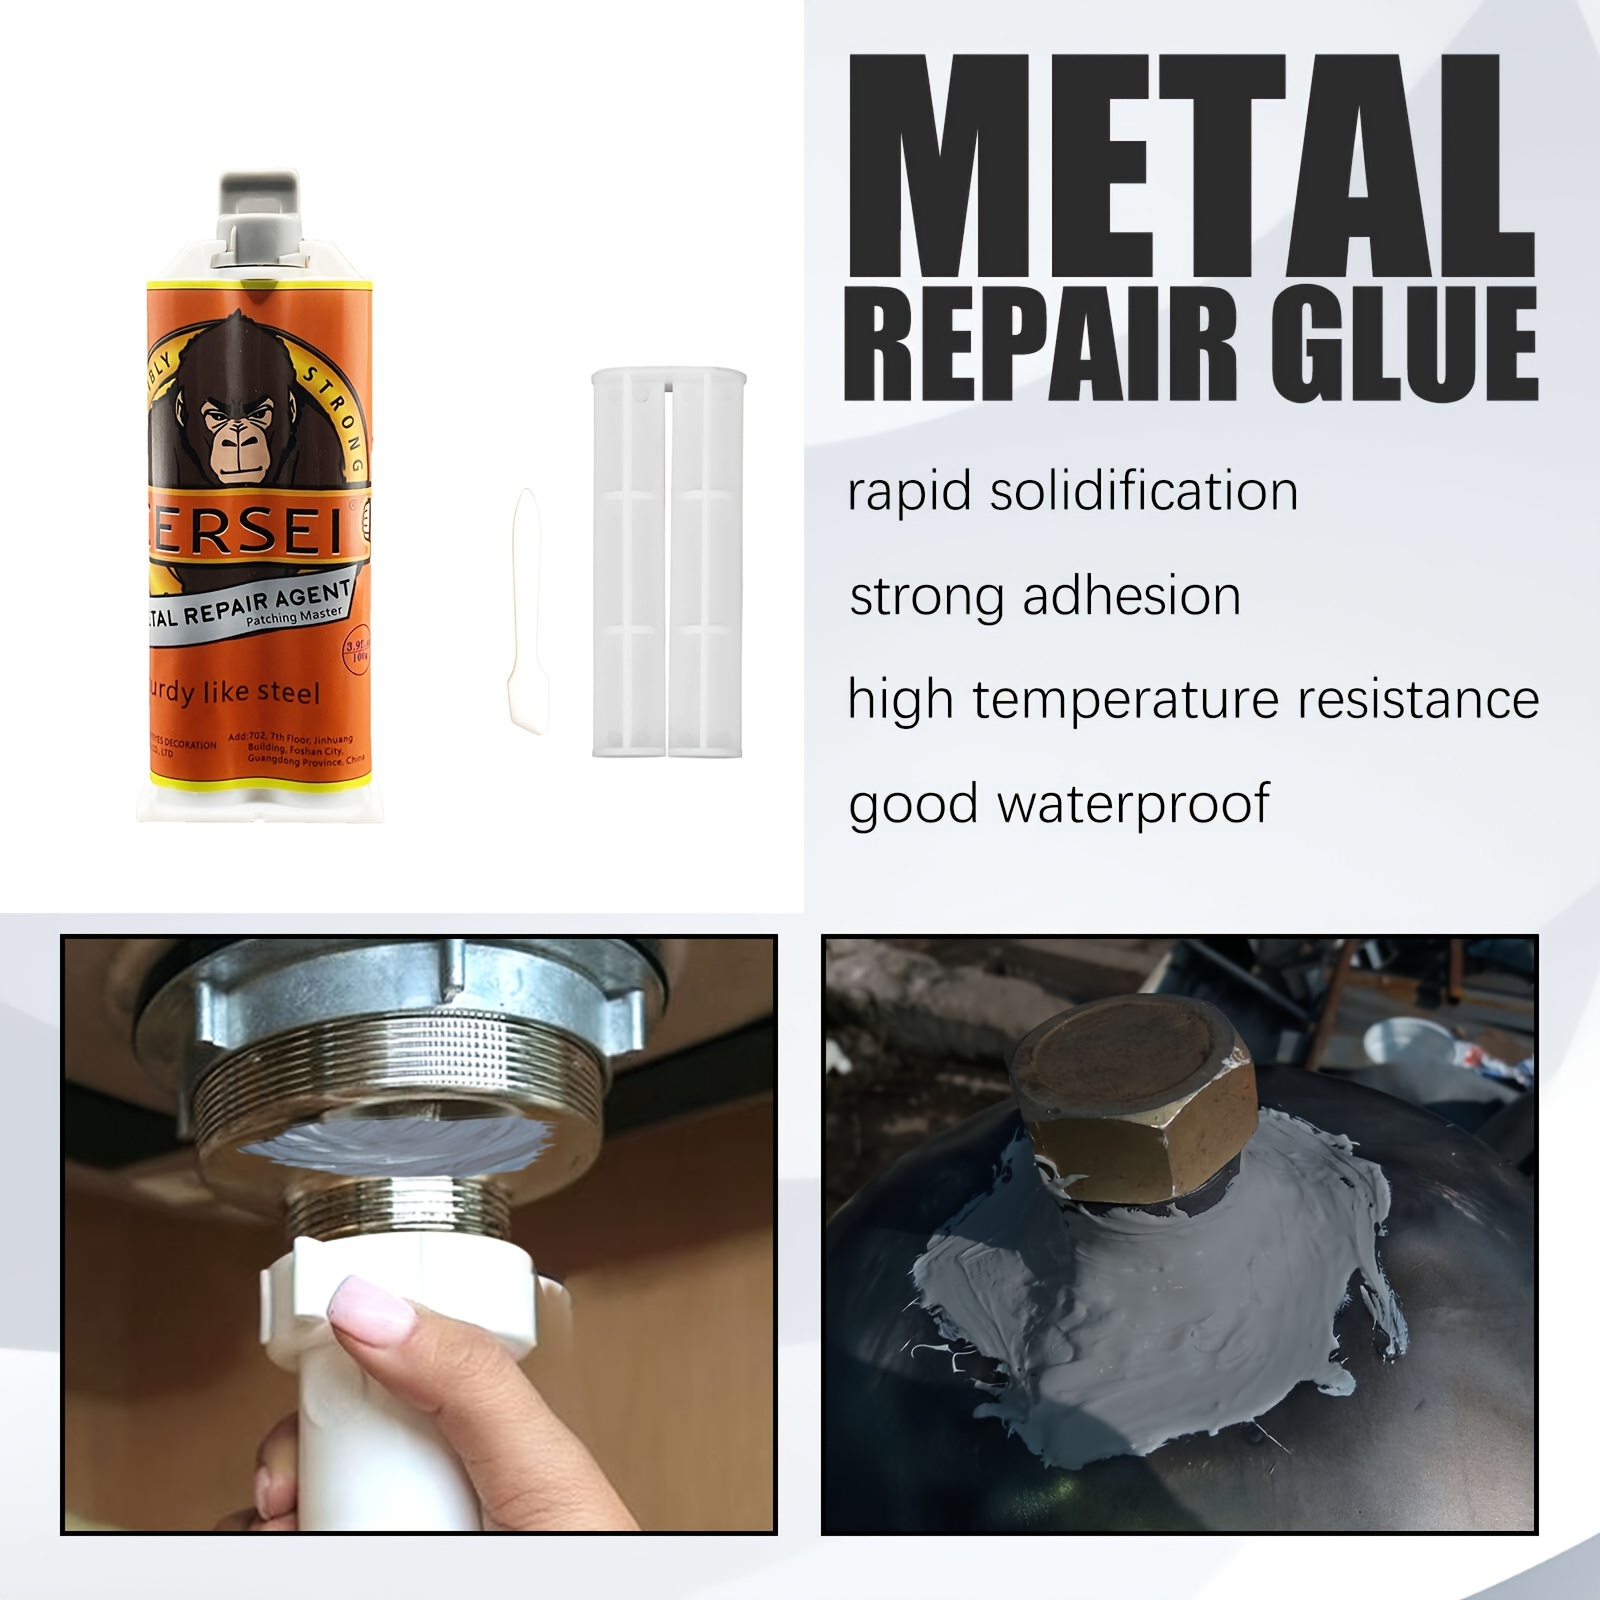 How to glue metal to metal